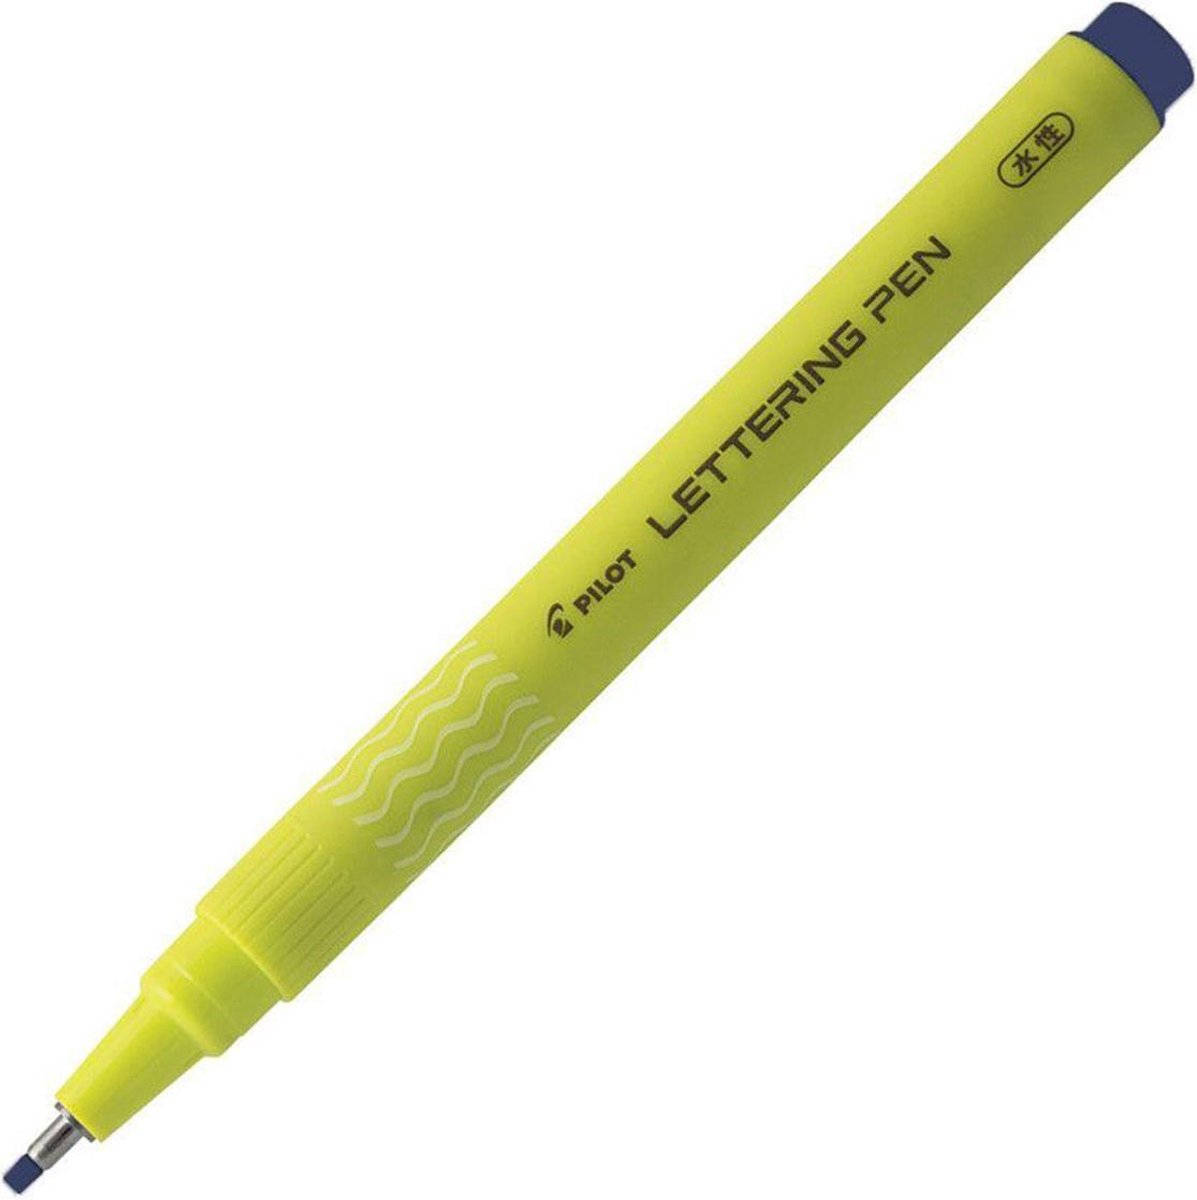 Pilot Blauwe Lettering Kalligrafiepen - 2.0mm Medium - Kalligrafie & handlettering pen